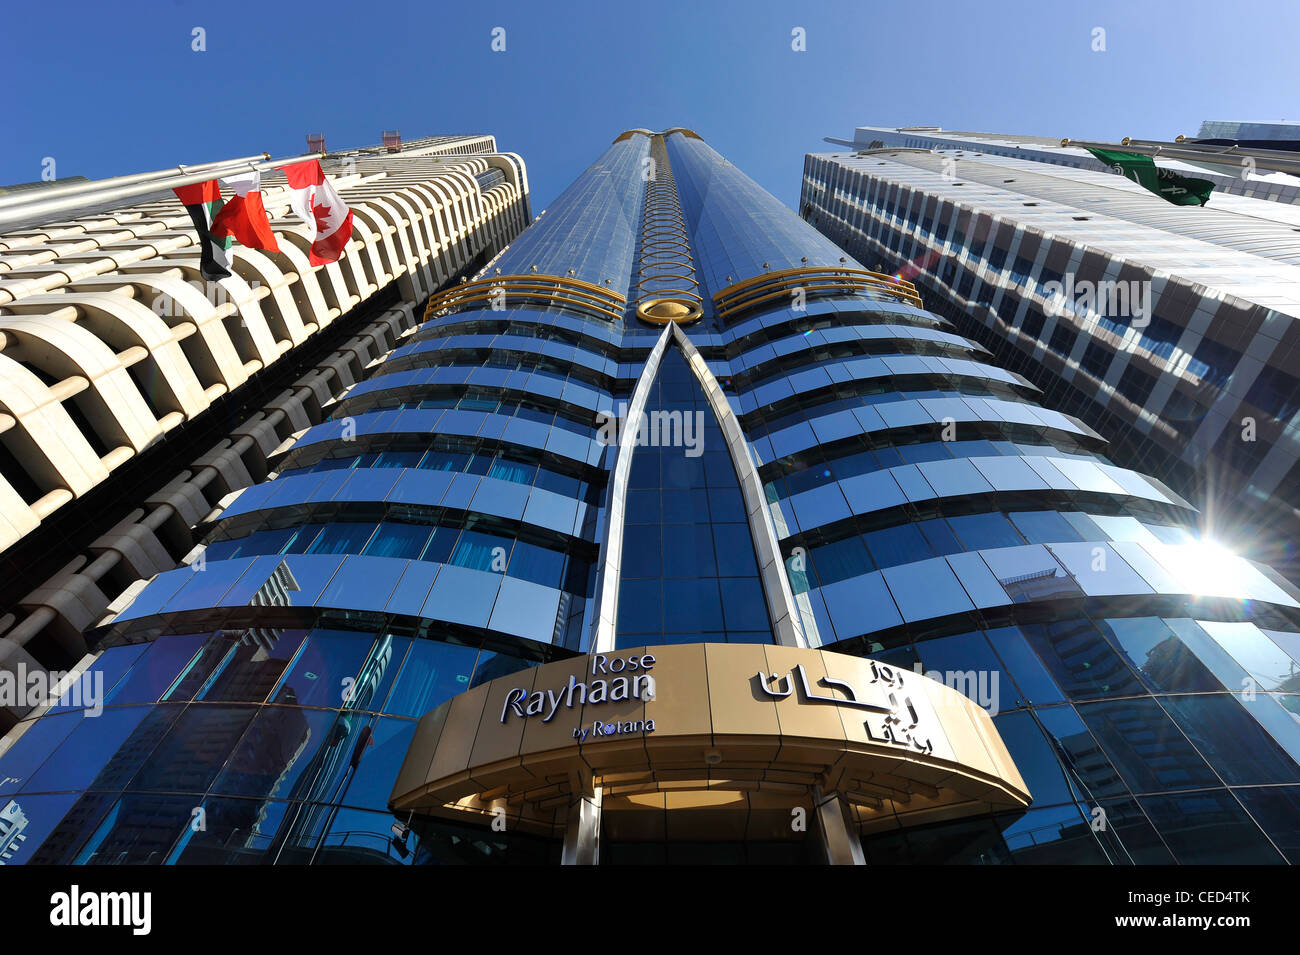 ROSE RAYHAAN by Rotana, le plus grand hôtel dans le monde, tours, gratte-ciel, d'hôtels, l'architecture moderne, Dubaï Banque D'Images